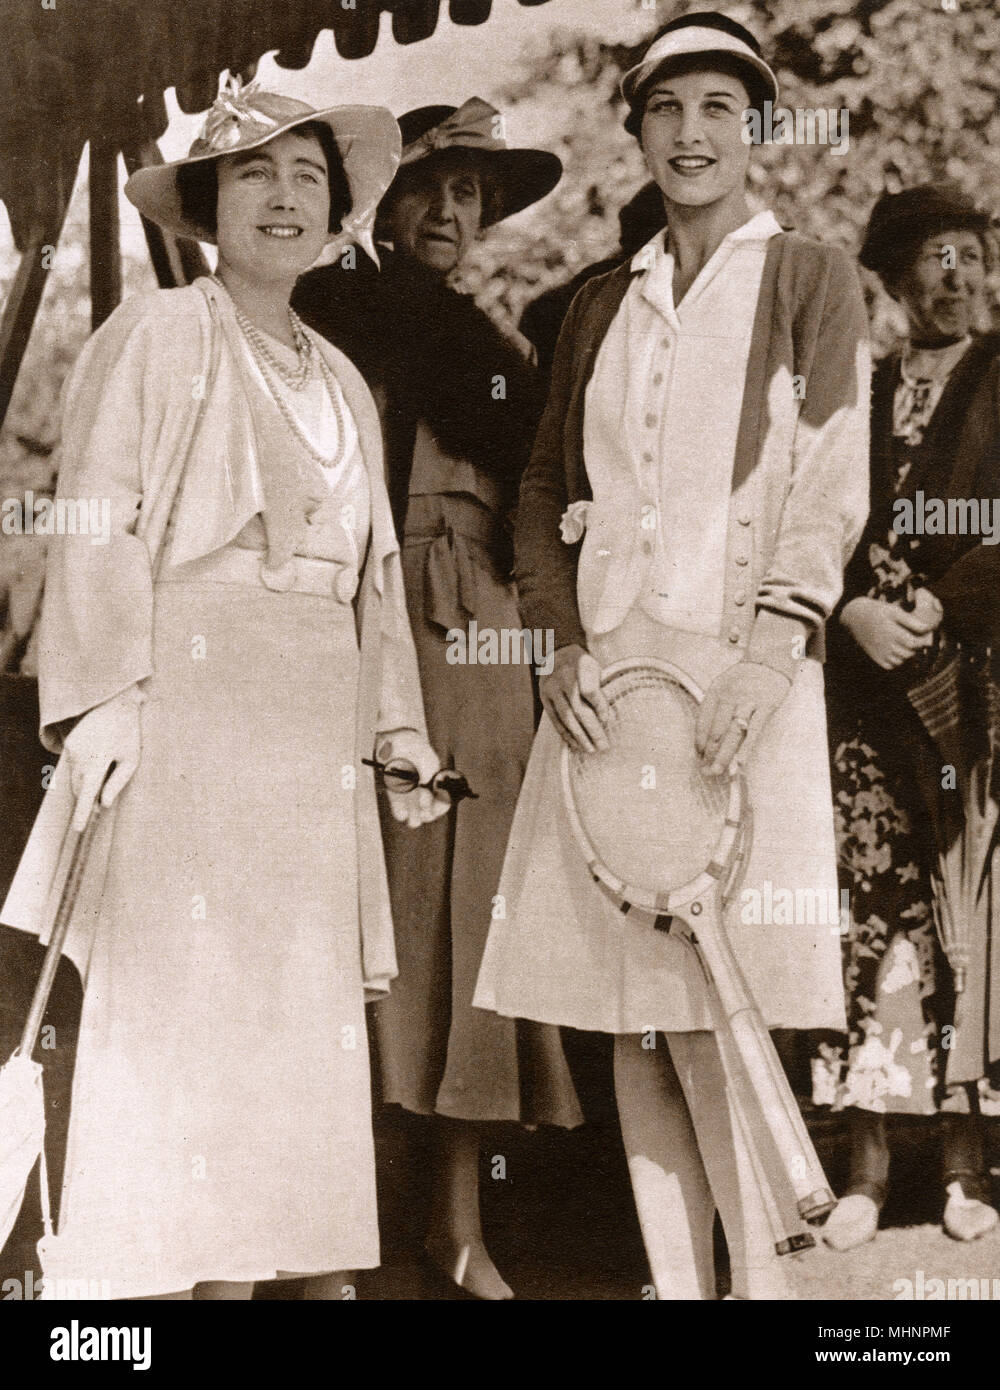 Elizabeth, duchesse d'York (plus tard, Elizabeth, la reine mère De 1900 à 2002) et Helen Wills Moody (1905-1998) au court de tennis sur gazon de Wimbledon. La princesse Marie Louise de Schleswig-Holstein (1872-1956) se tient derrière la Date : 1935 Banque D'Images